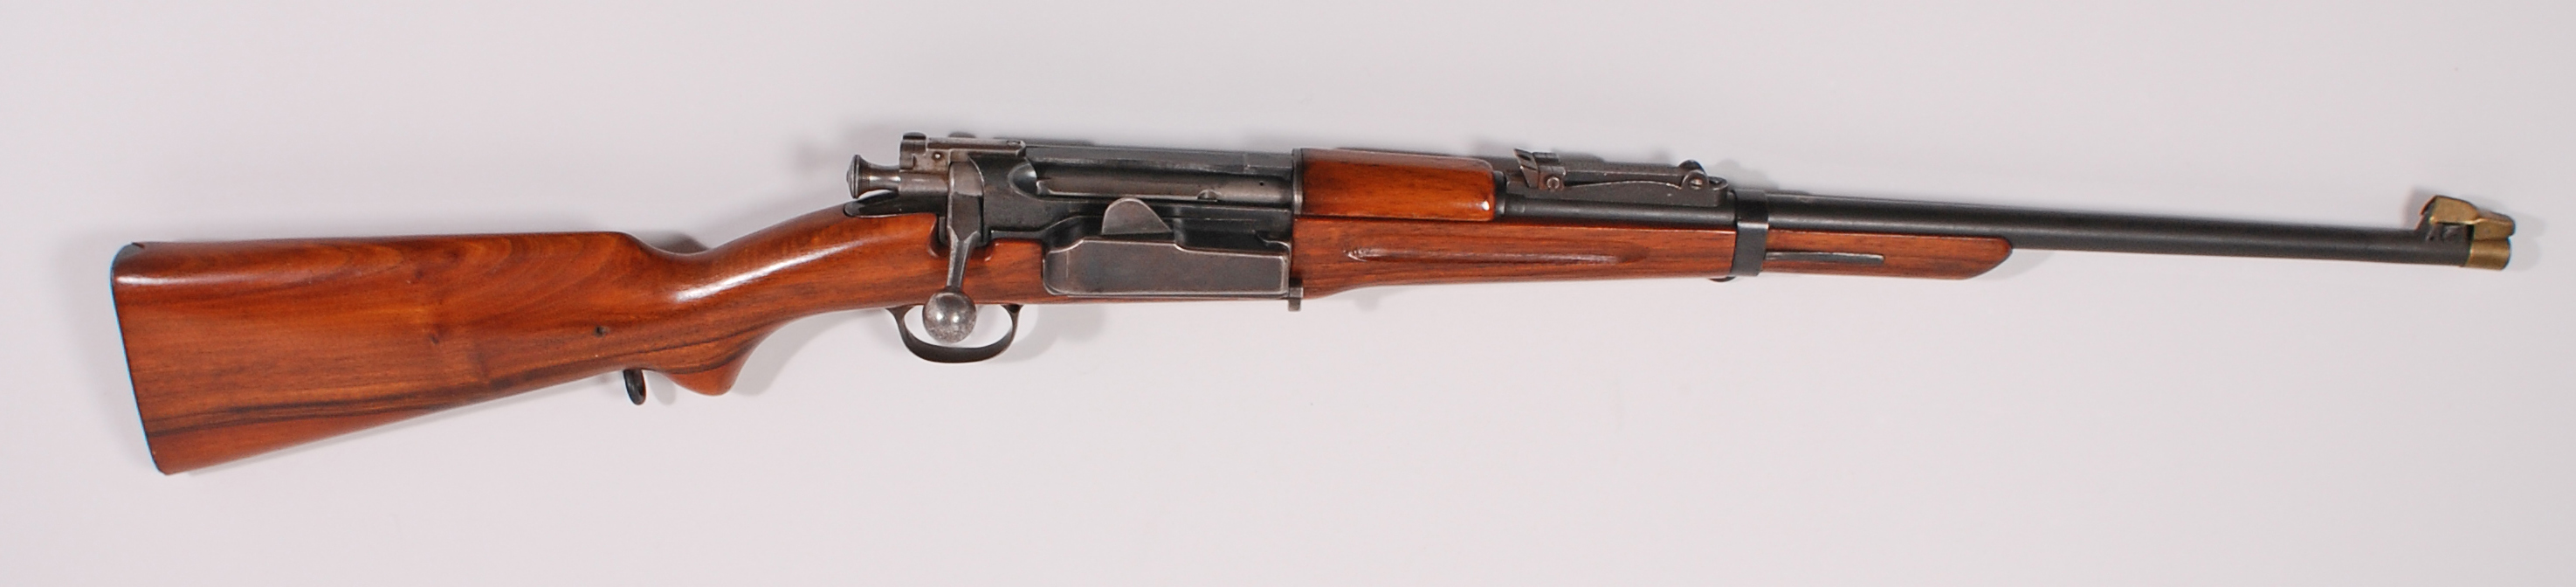 Rifle-Kongsberg-Krag-M1895-2583-1.jpg